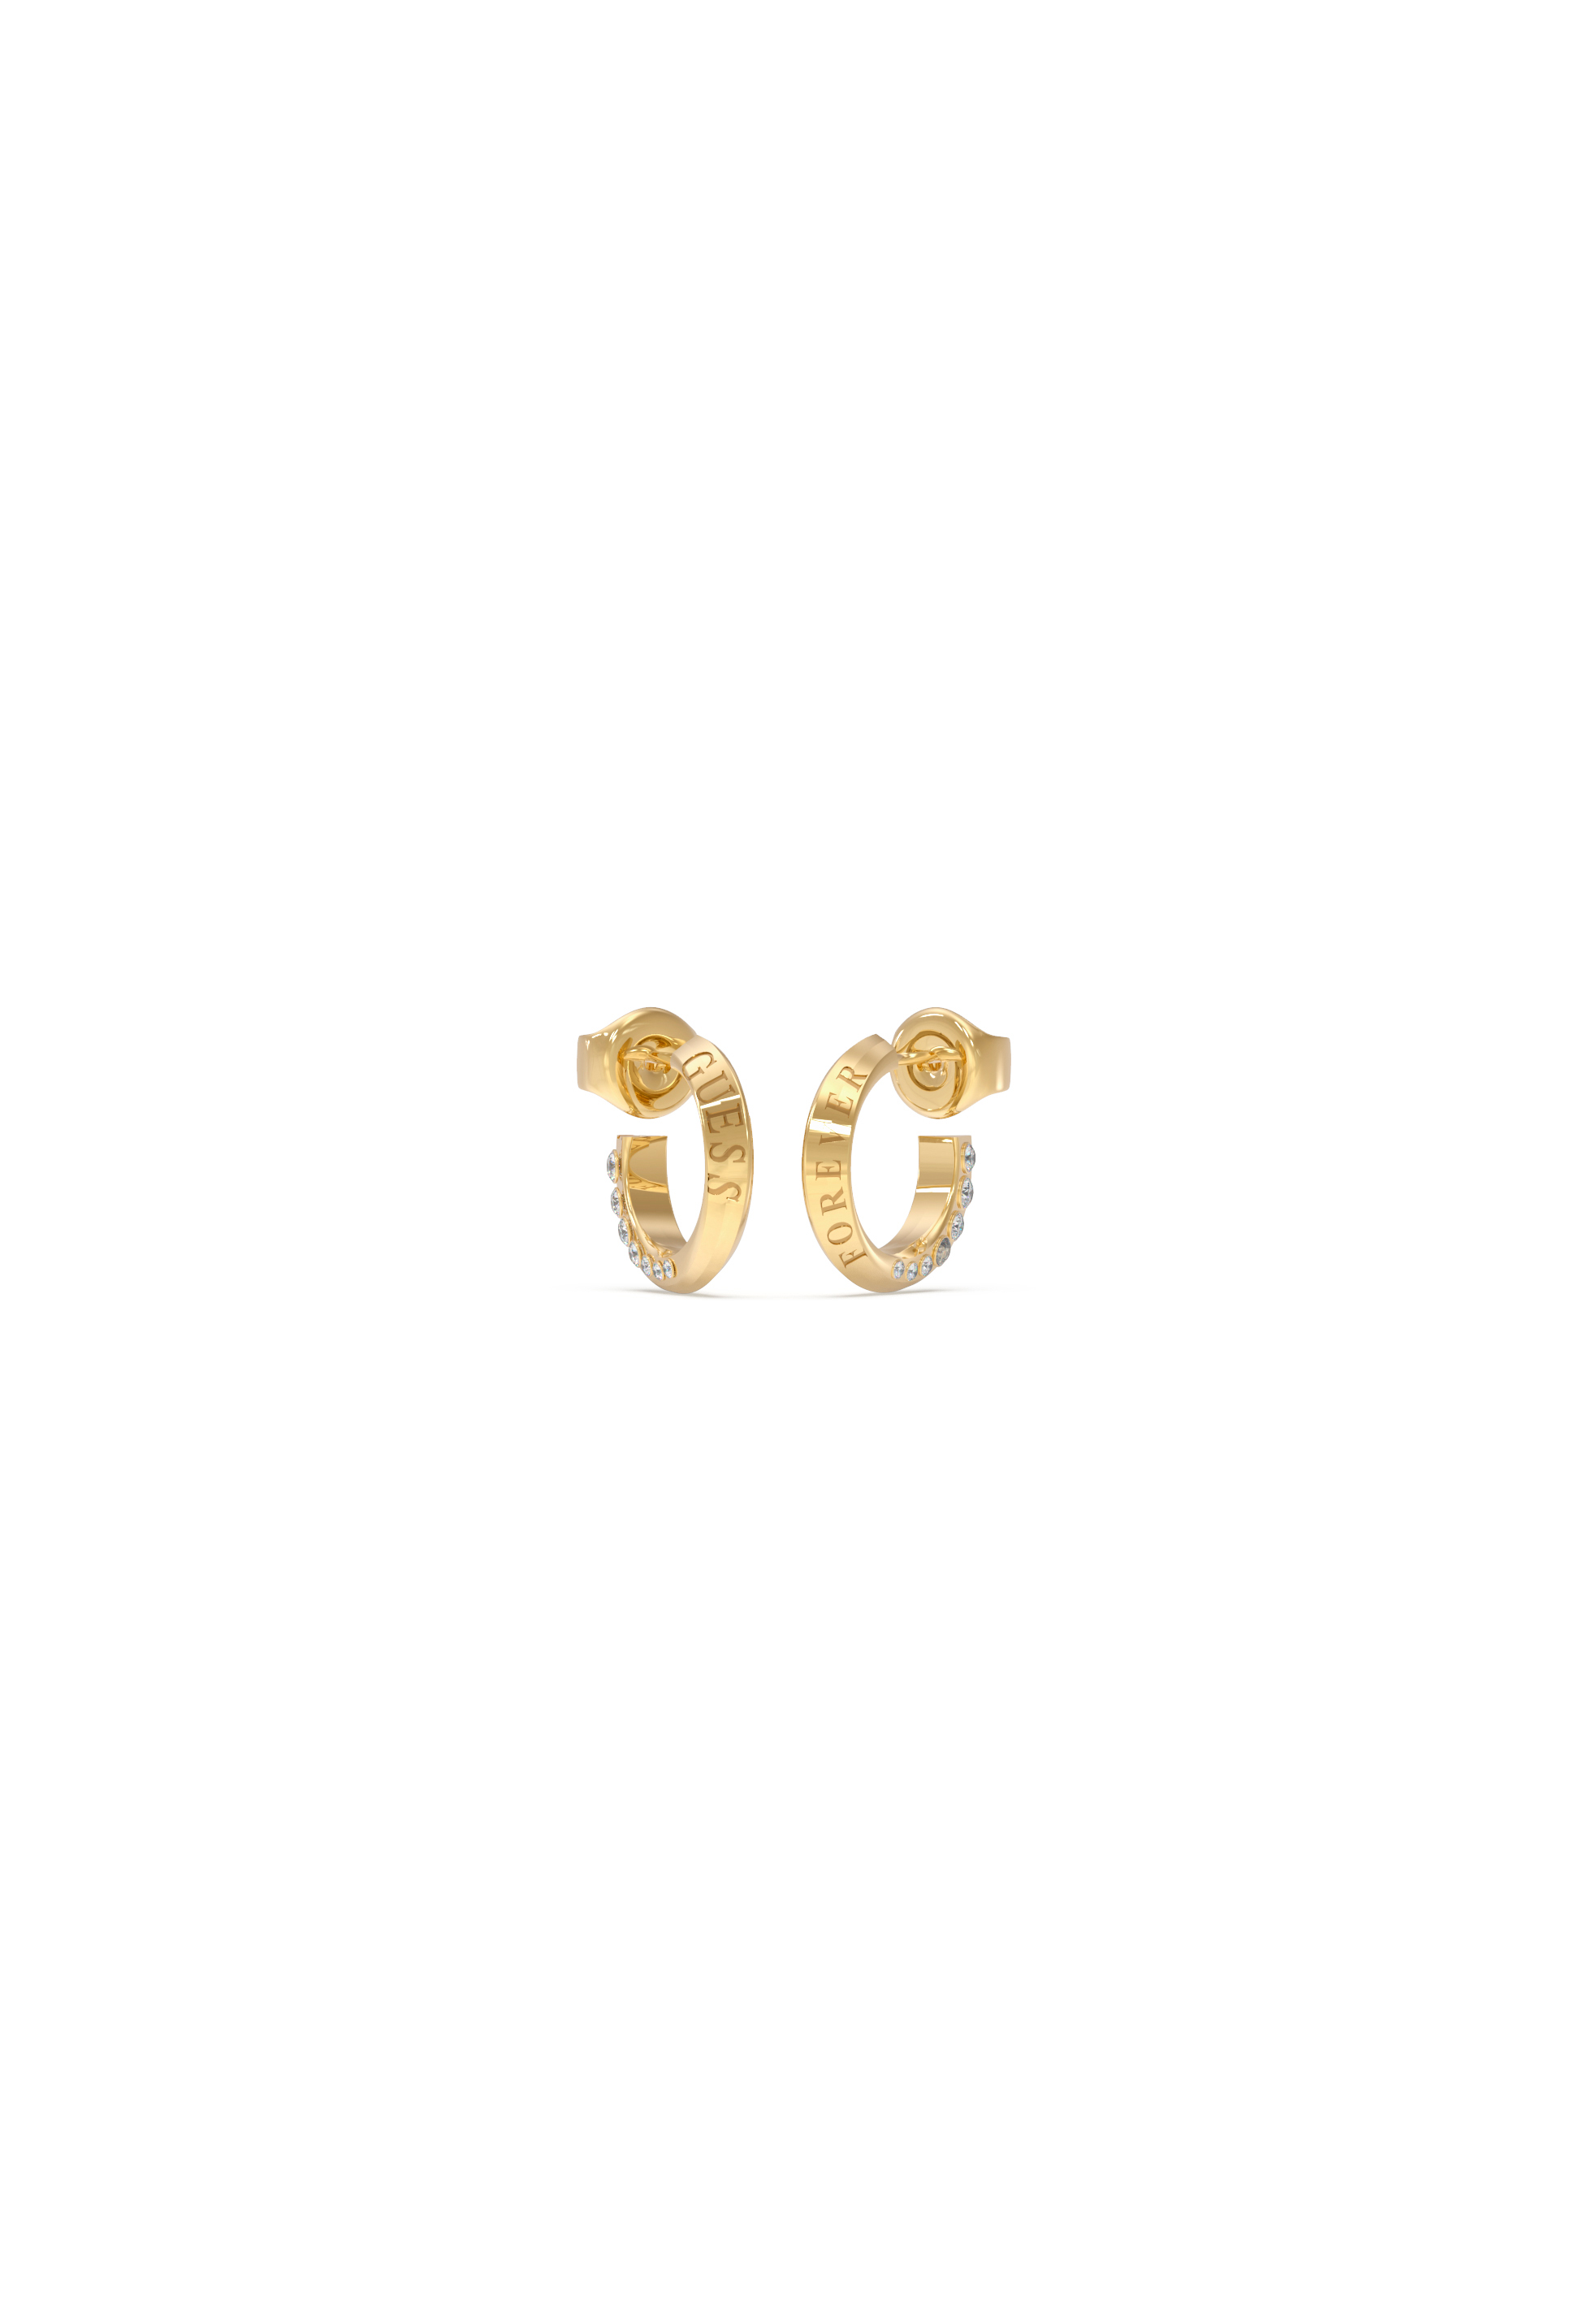 Guess Forever Links Gold Hoop Earrings UBE02189YG